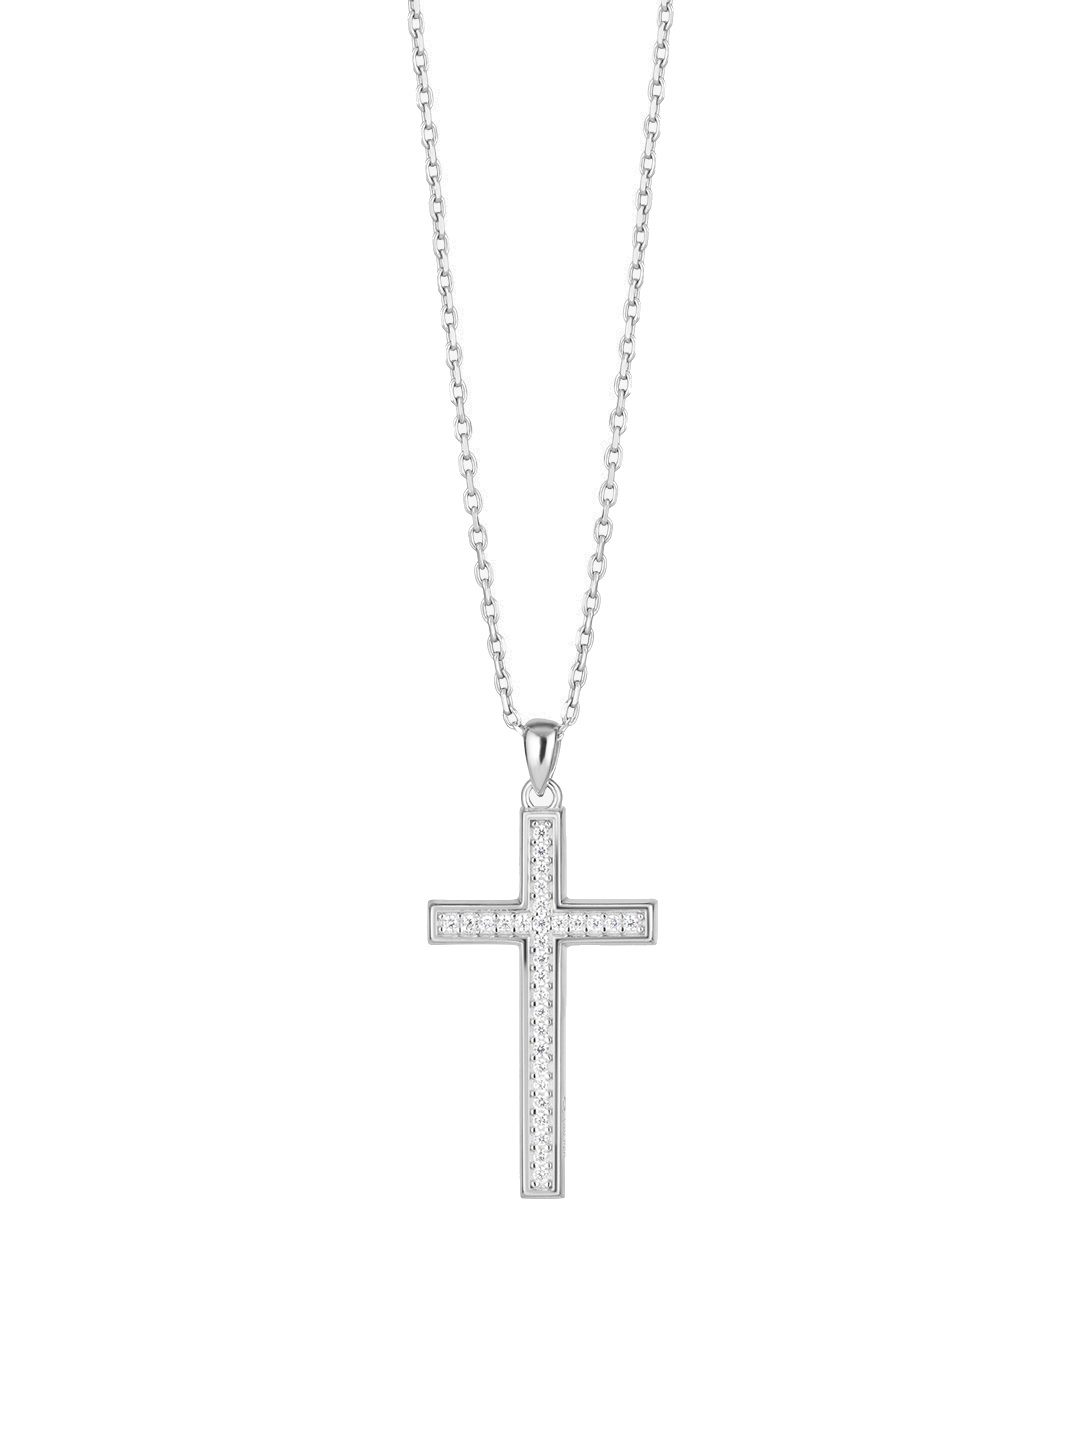 Preciosa Strieborný náhrdelník s kubickou zirkóniou Preciosa Cross Candy 5407 00